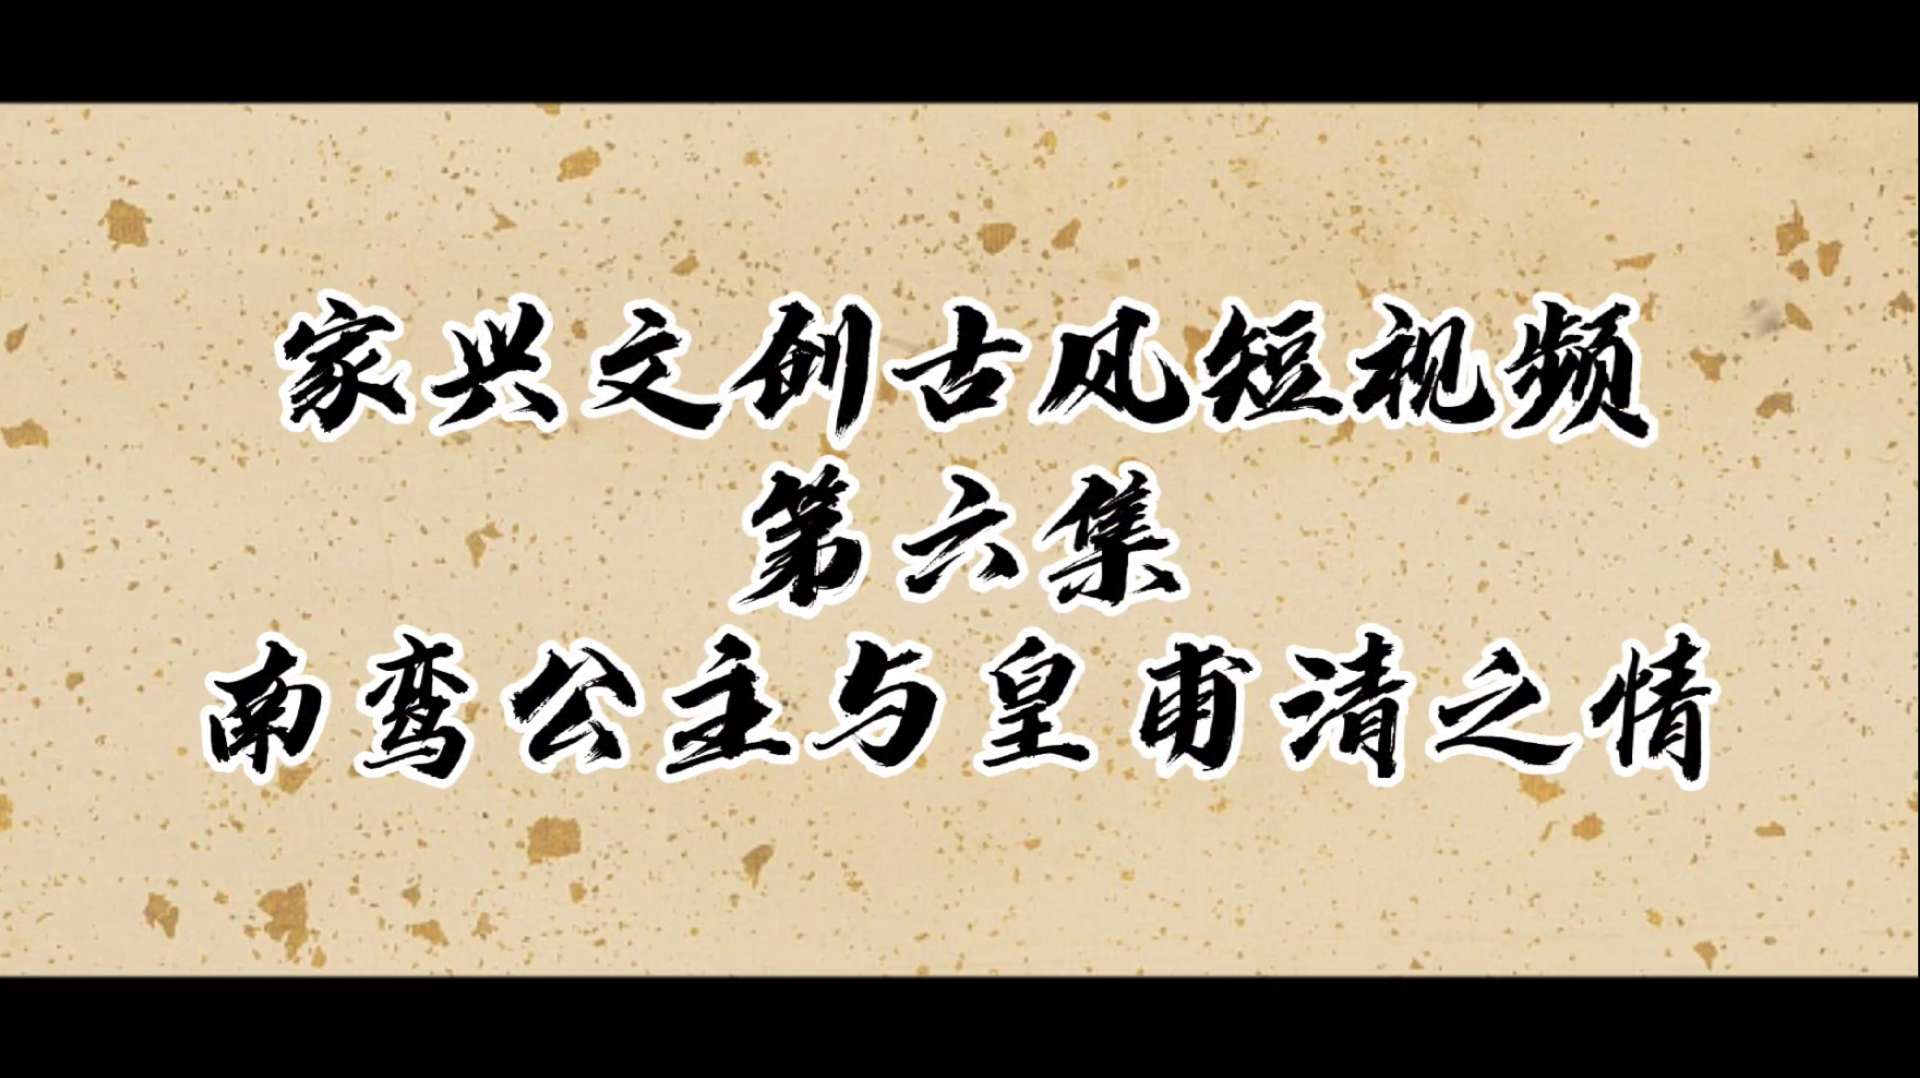 深圳古风短视频第六集∶南皇之情